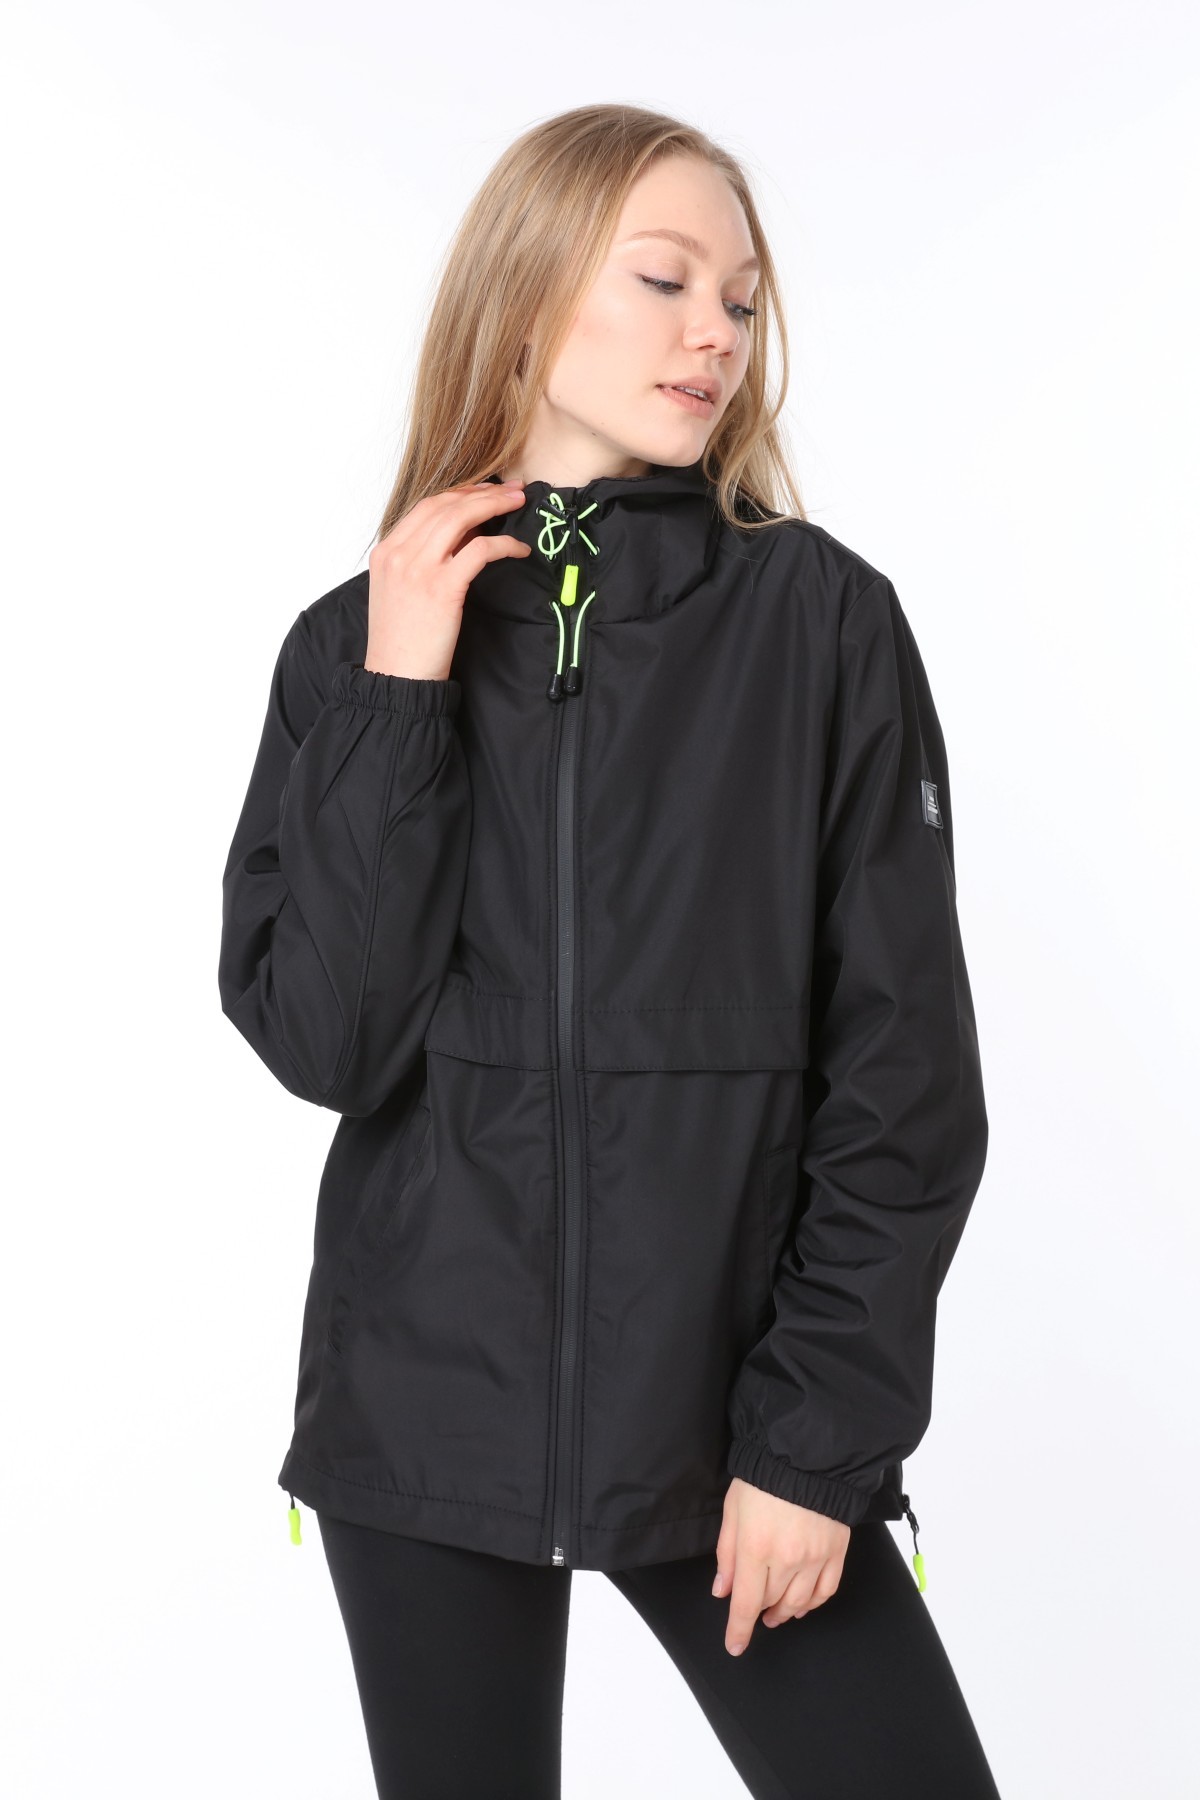 Ghassy Co.Kadın  Rüzgarlık/Yağmurluk Yırtmaç Detaylı Mevsimlik Siyah Spor Ceket